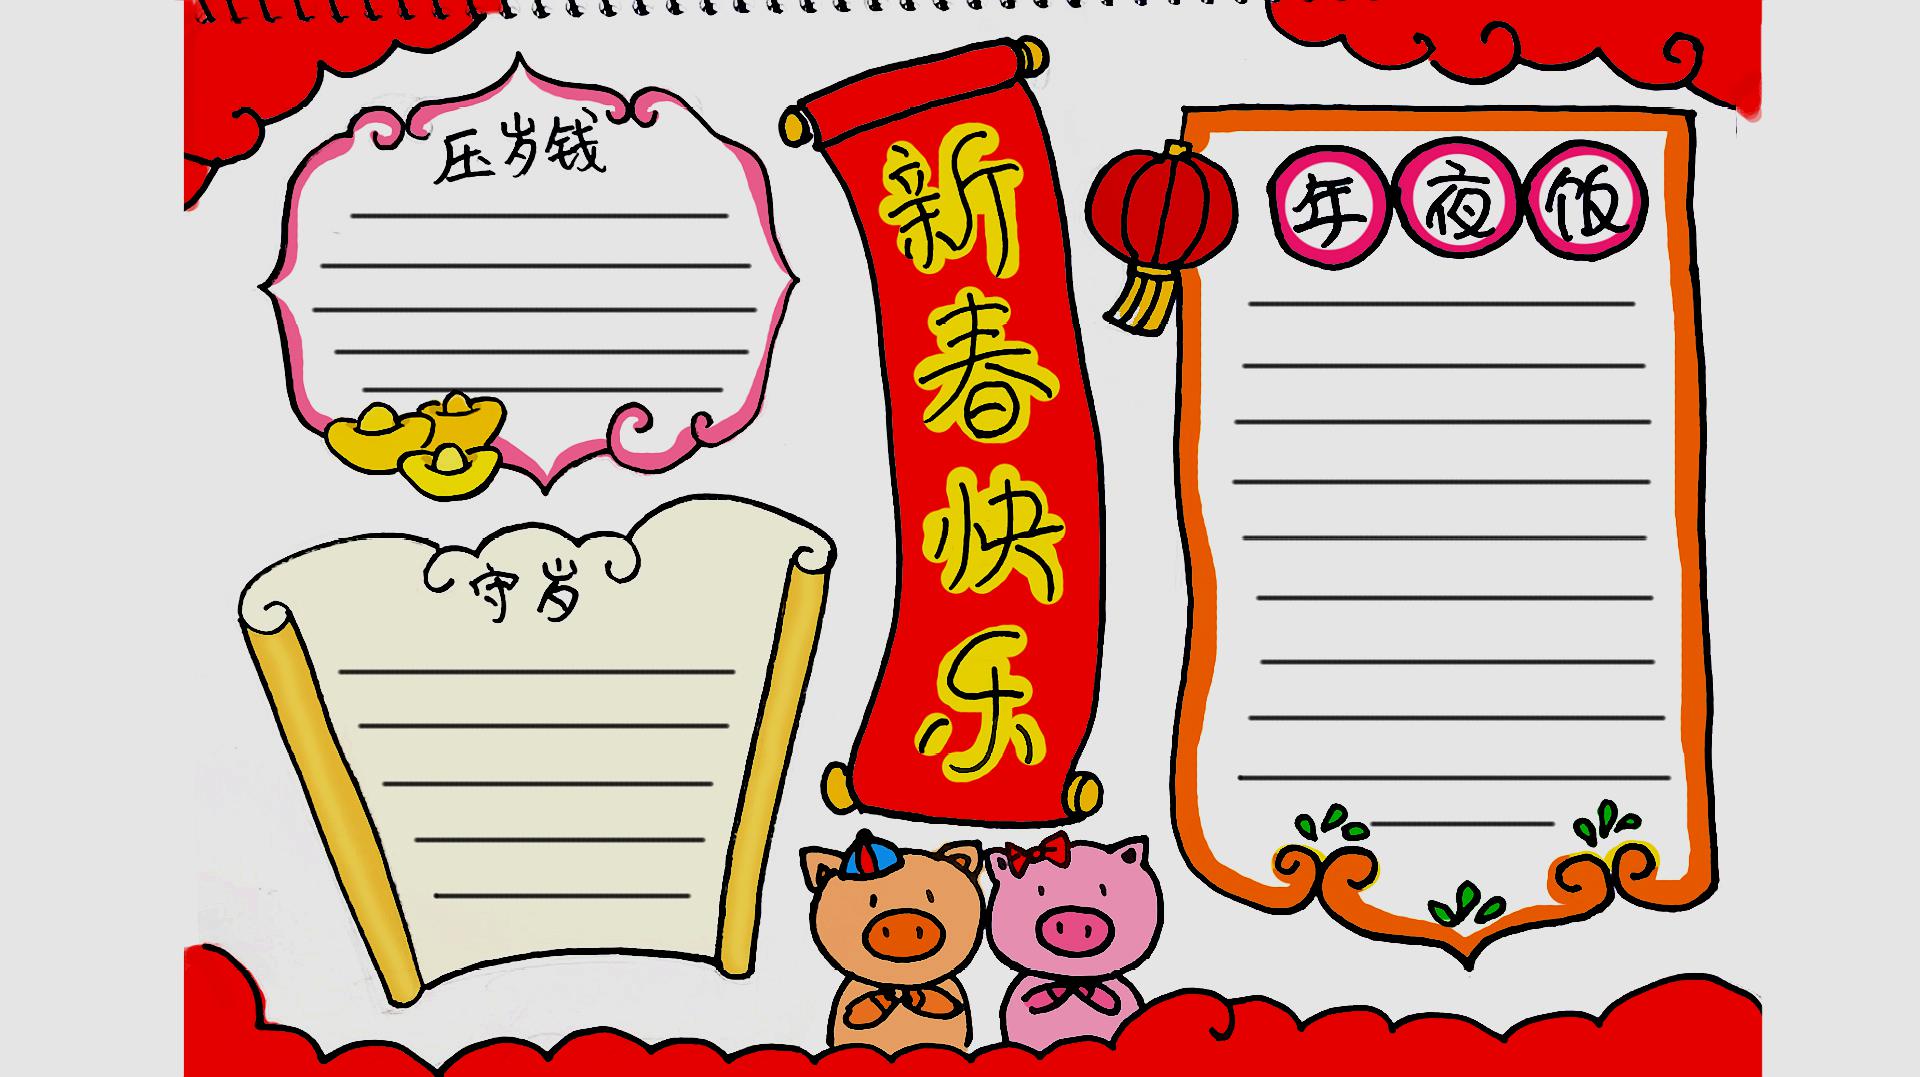 寒假作业——春节主题手抄报模板,快来制作自己的手抄报吧!